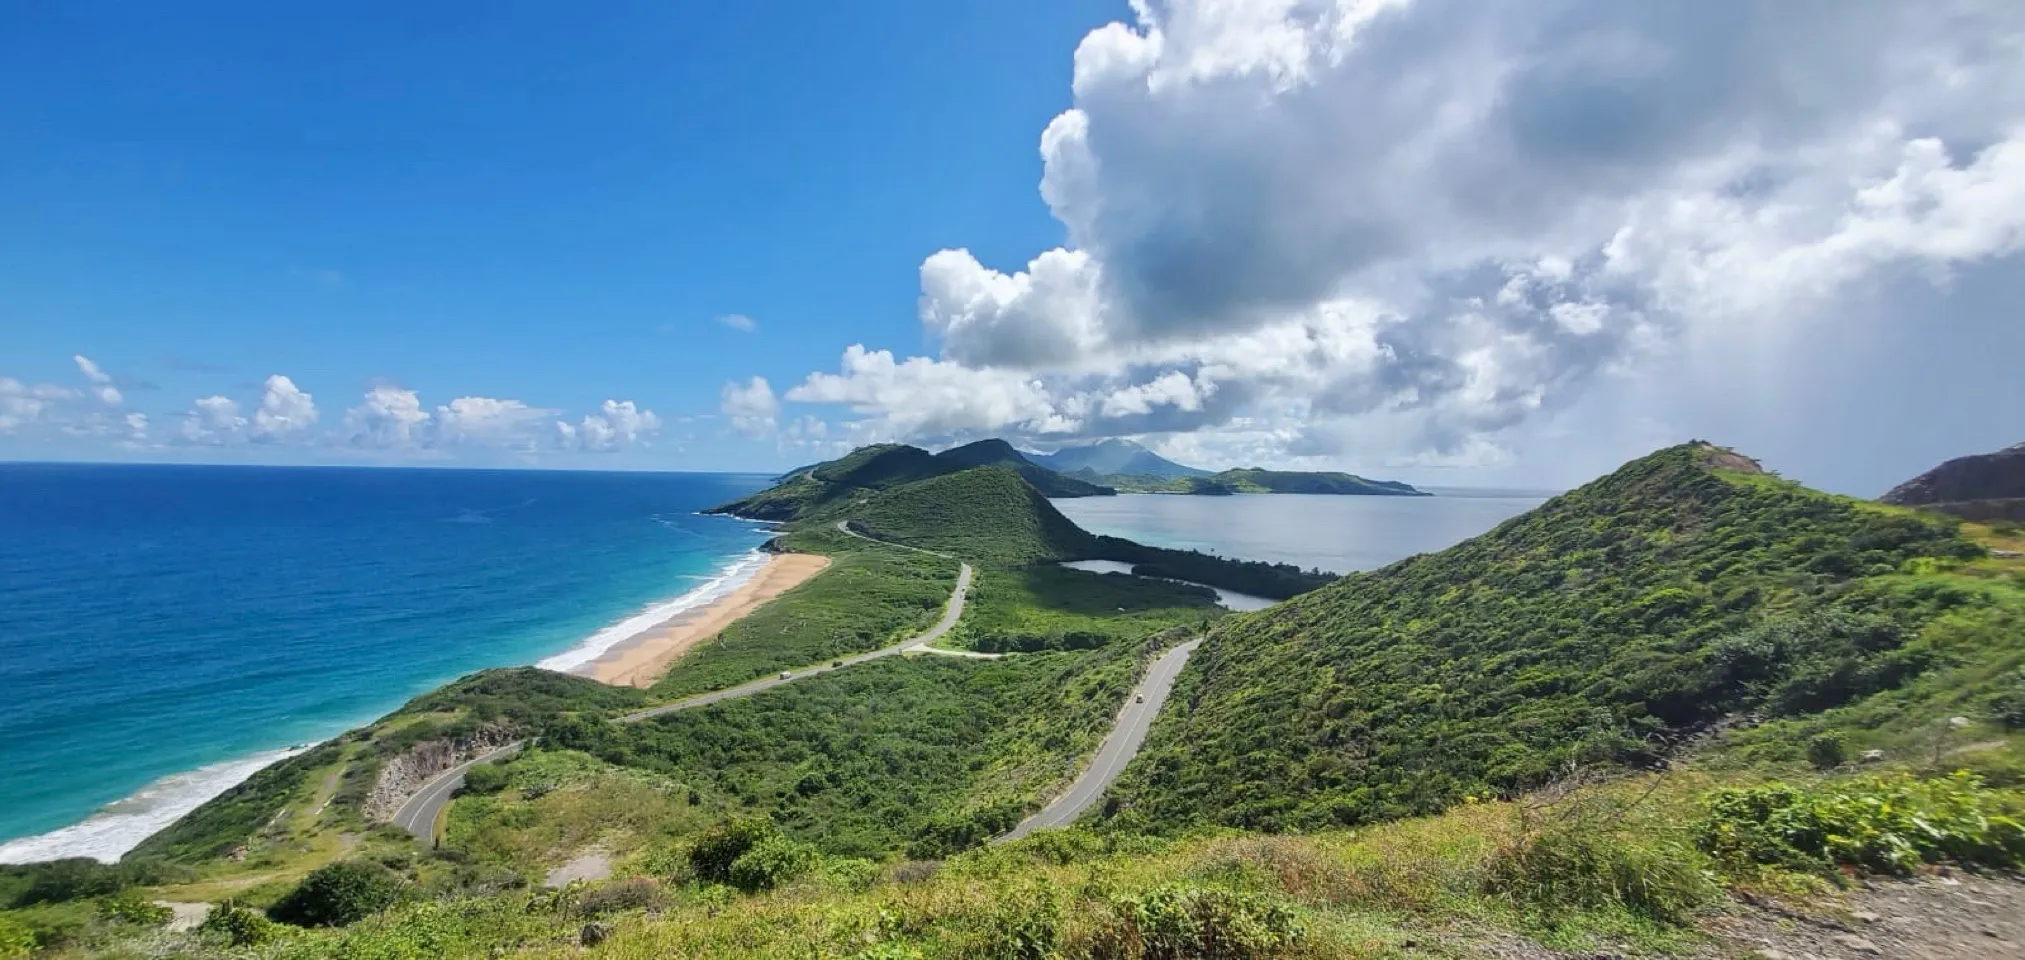 Saint George Basseterre Region | Saint Kitts and Nevis - Rated 5.3